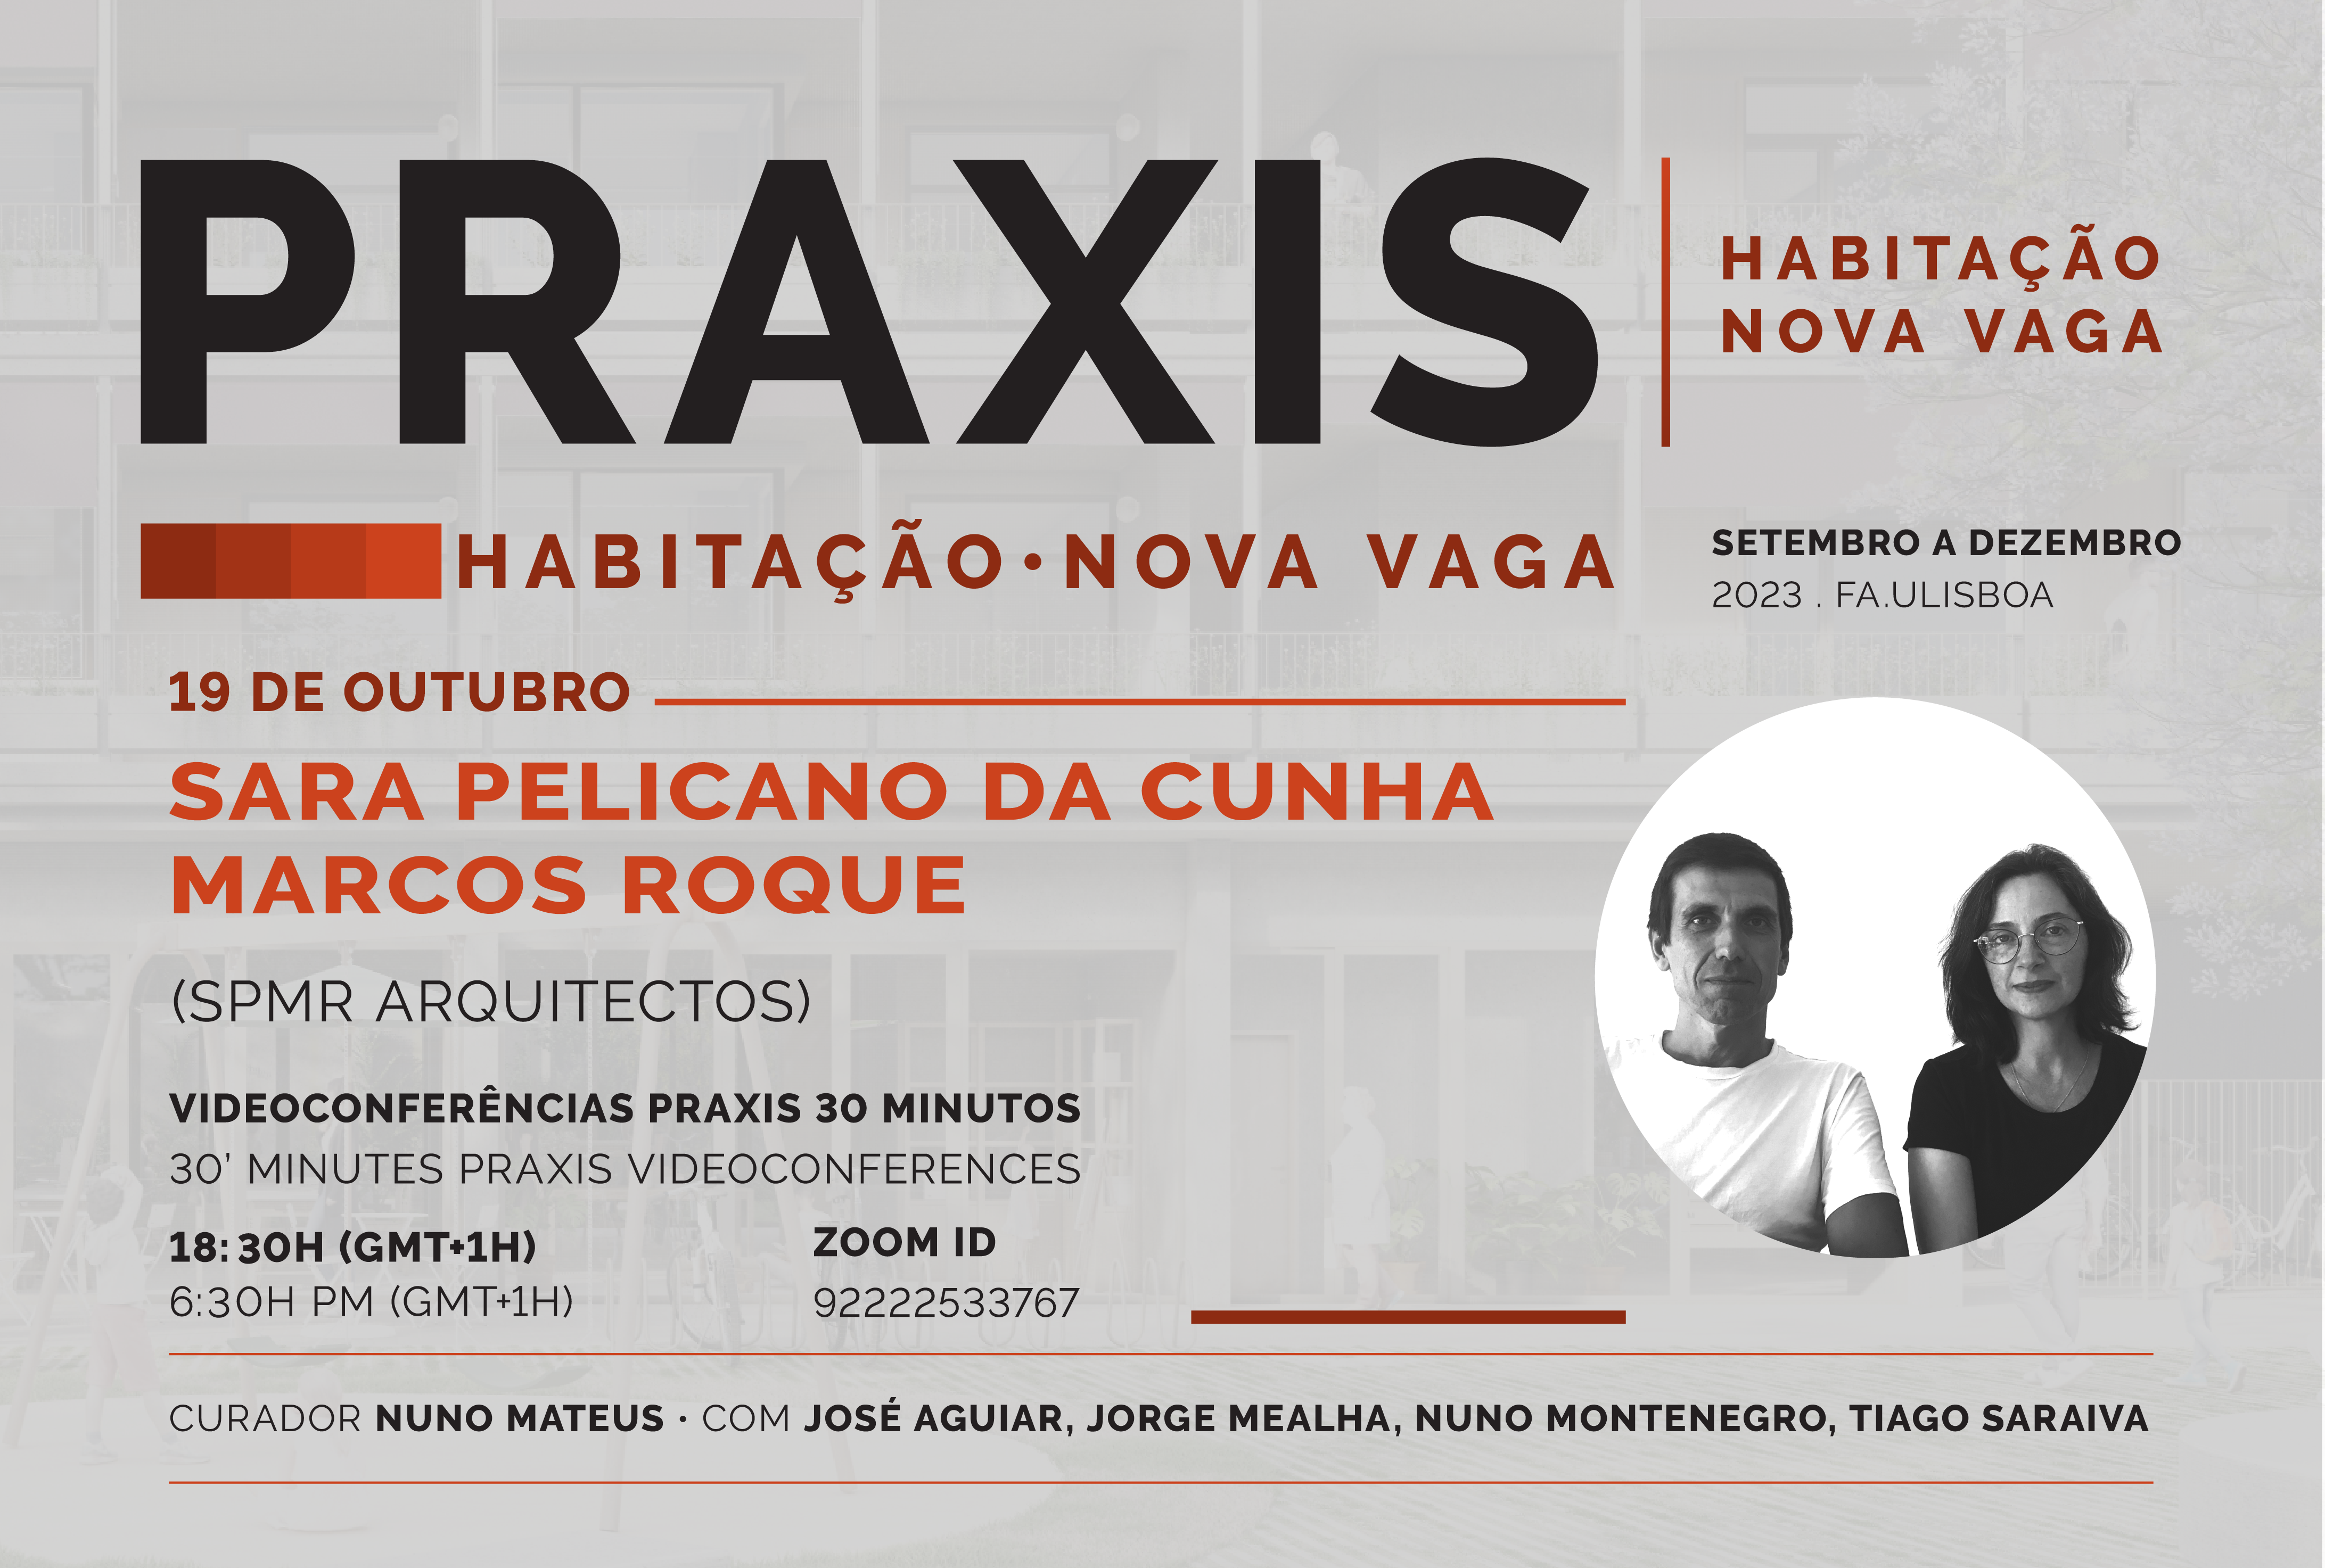 HABITAÇÂO NOVA VAGA, com Sara Pelicano da Cunha e Marcos Roque (SPMR Arquitetos) 